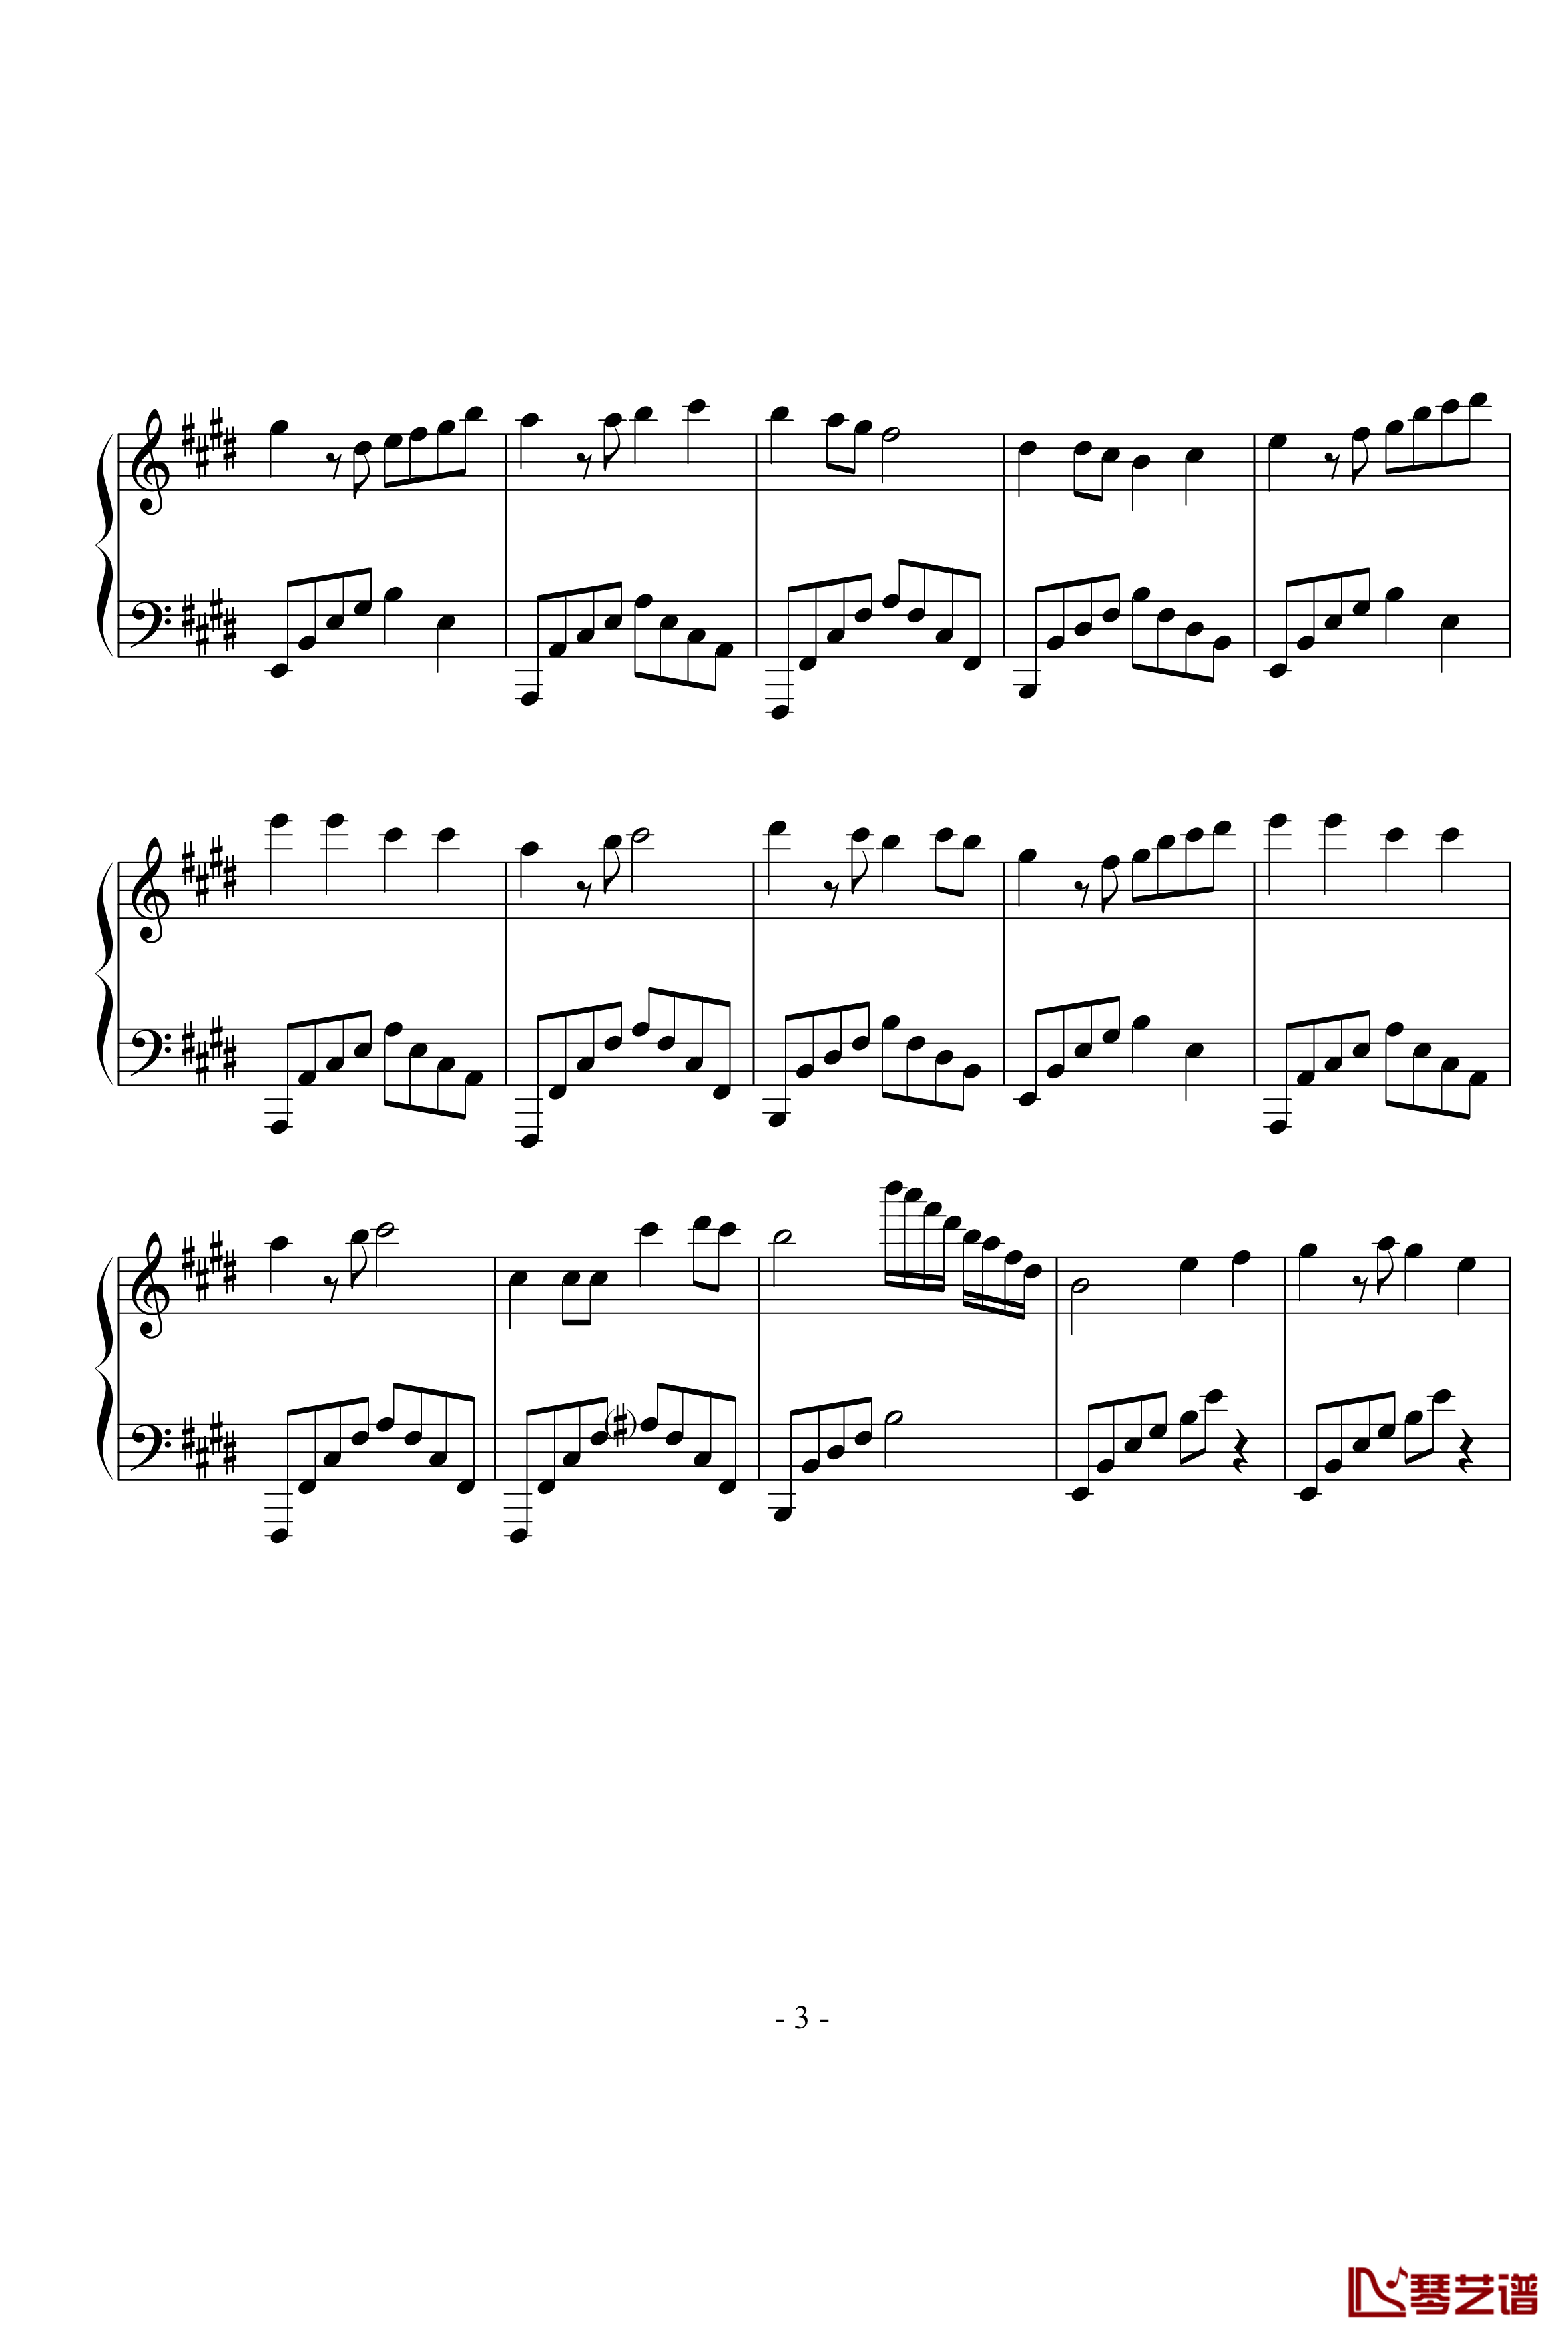 同一首歌钢琴谱-完整版-毛阿敏3